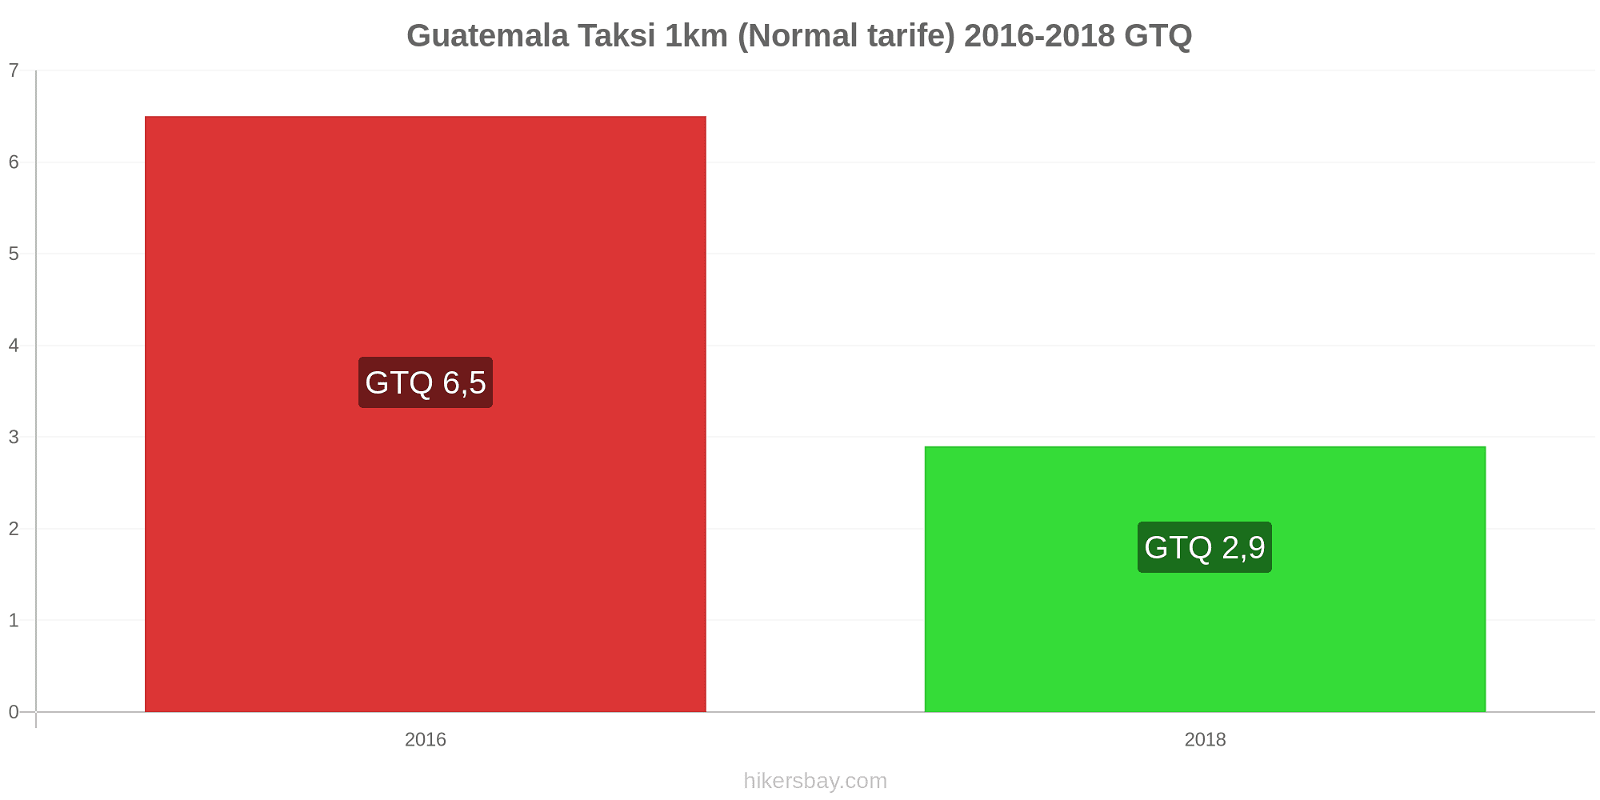 Guatemala fiyat değişiklikleri Taksi 1km (Normal tarife) hikersbay.com